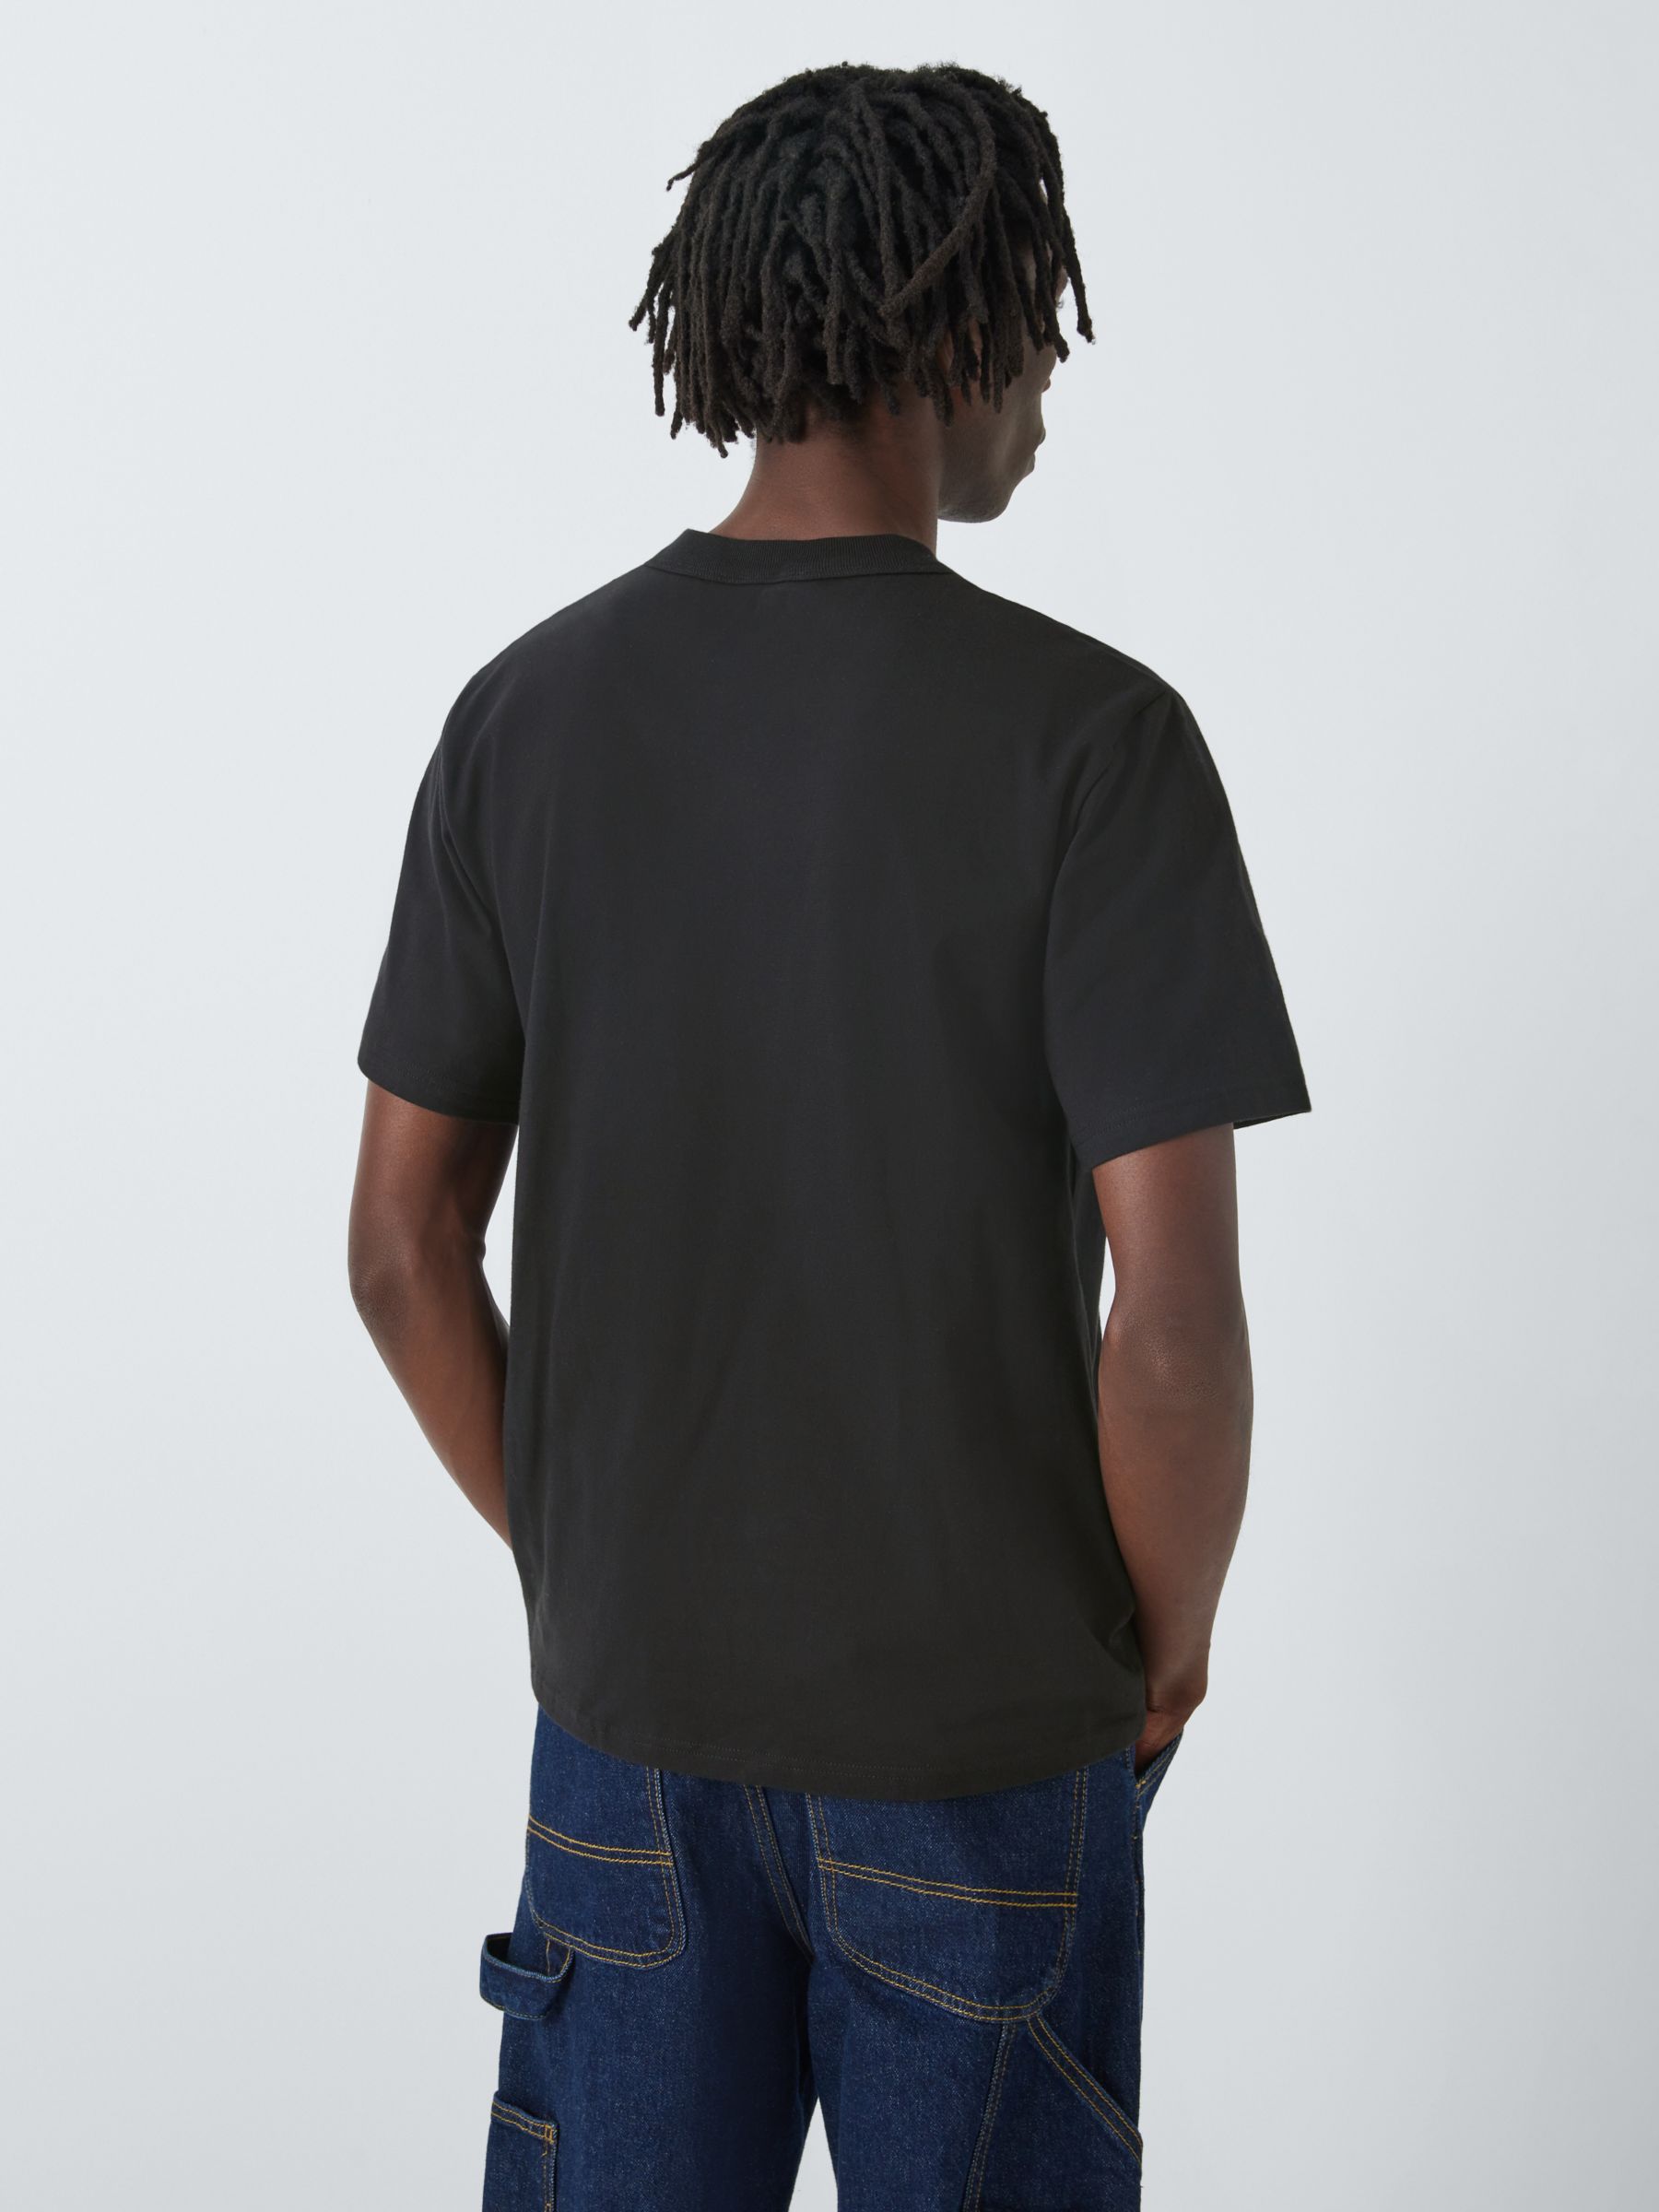 Armor Lux Pocket Cotton T-Shirt, Black, S